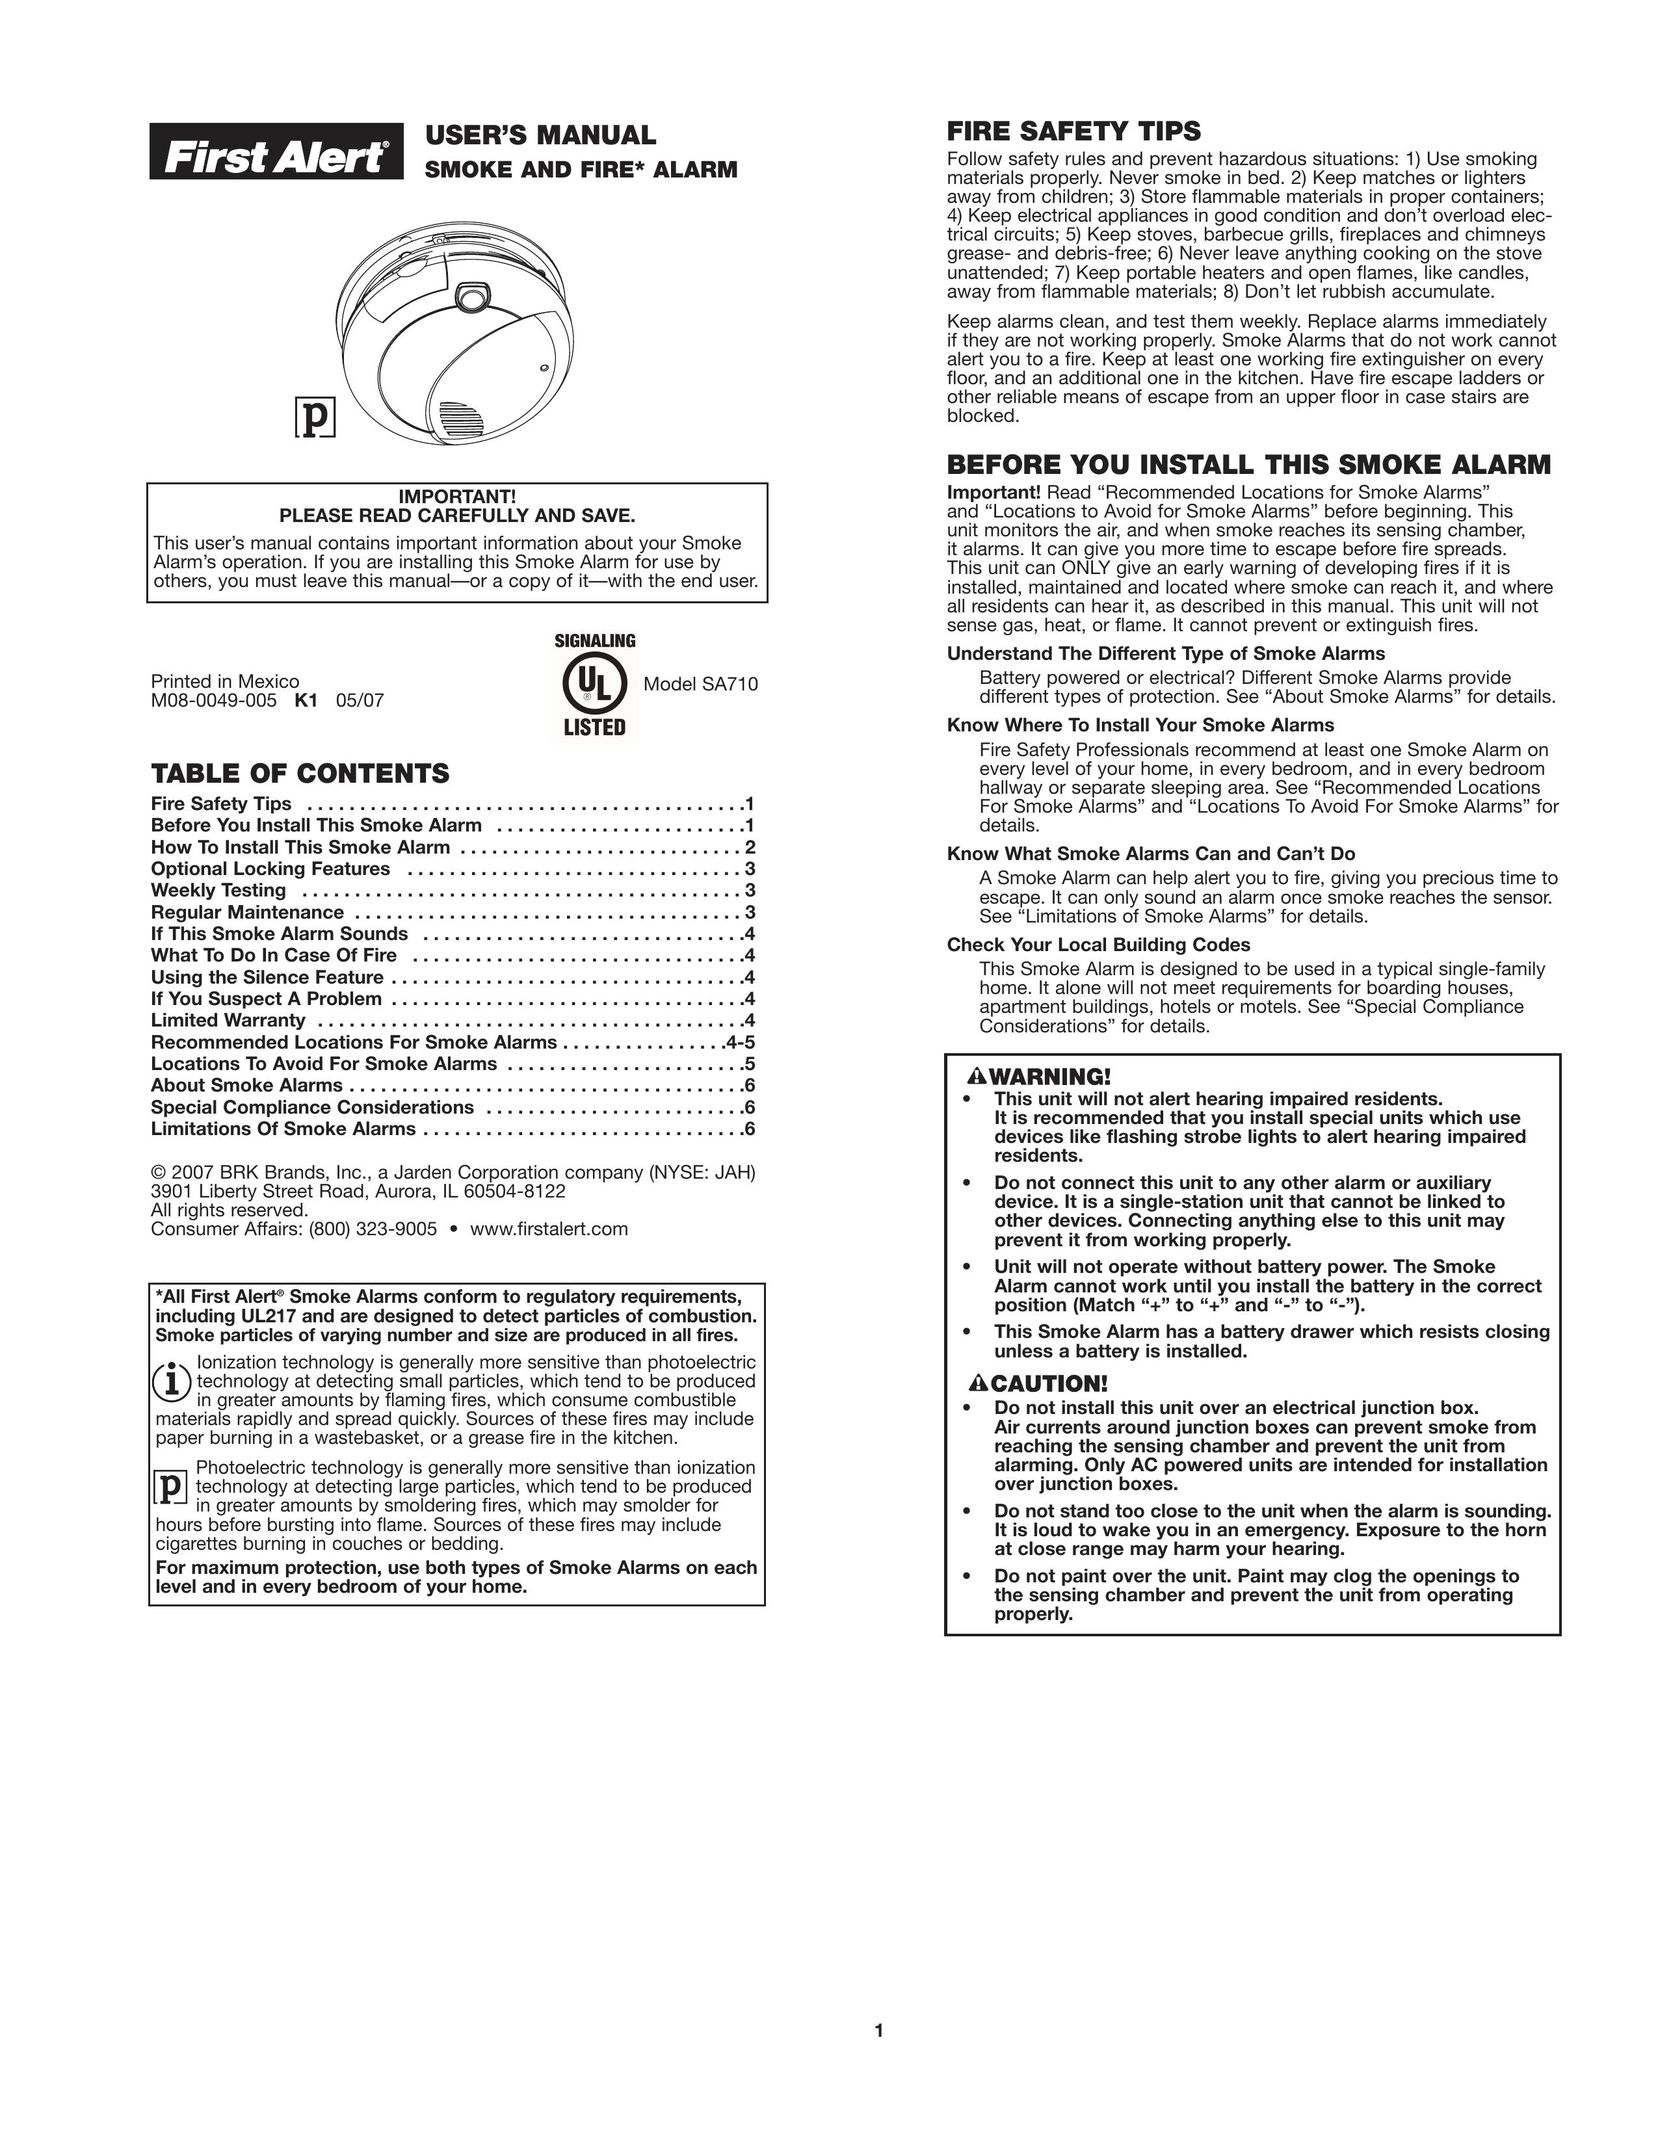 First Alert SA710 Smoke Alarm User Manual